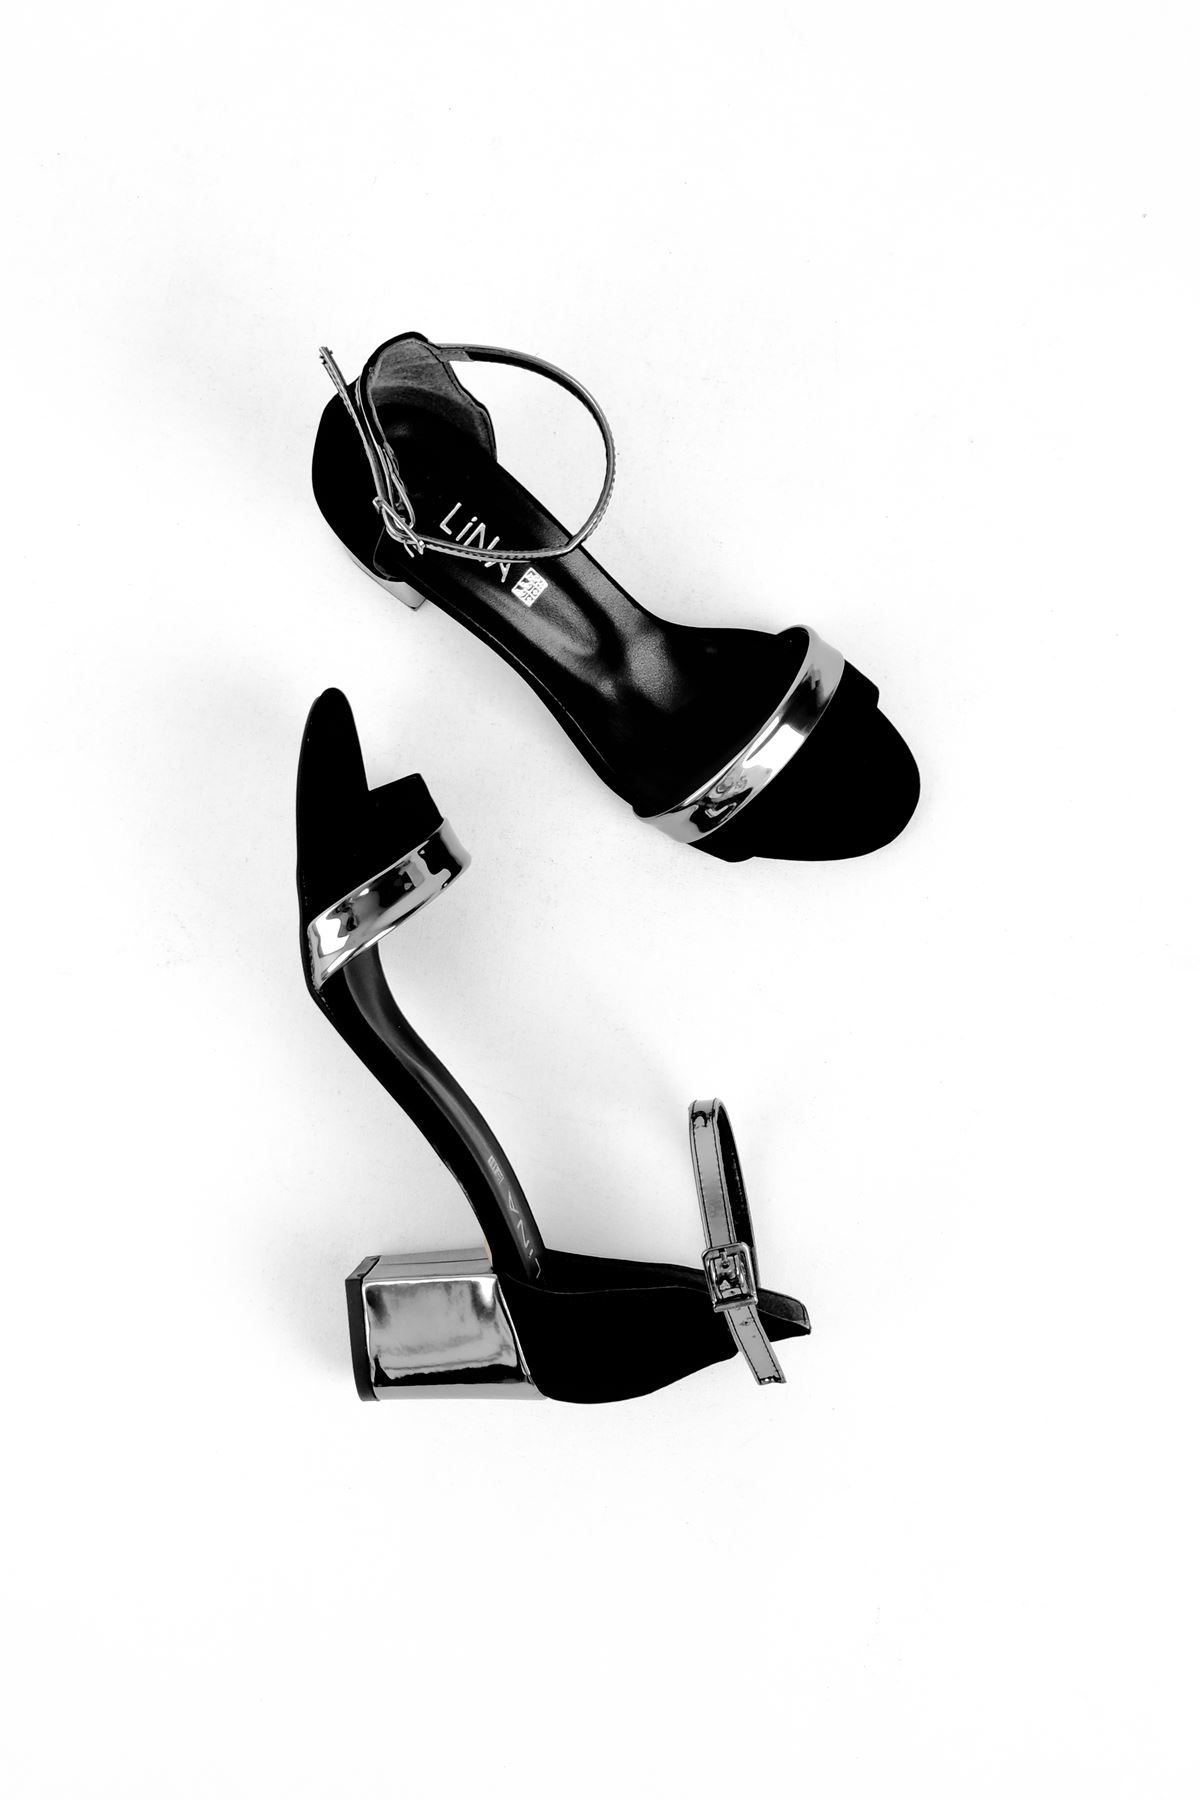 Josef Kadın Topuğu Gümüş Detaylı Topuklu Ayakkabı-S.Siyah